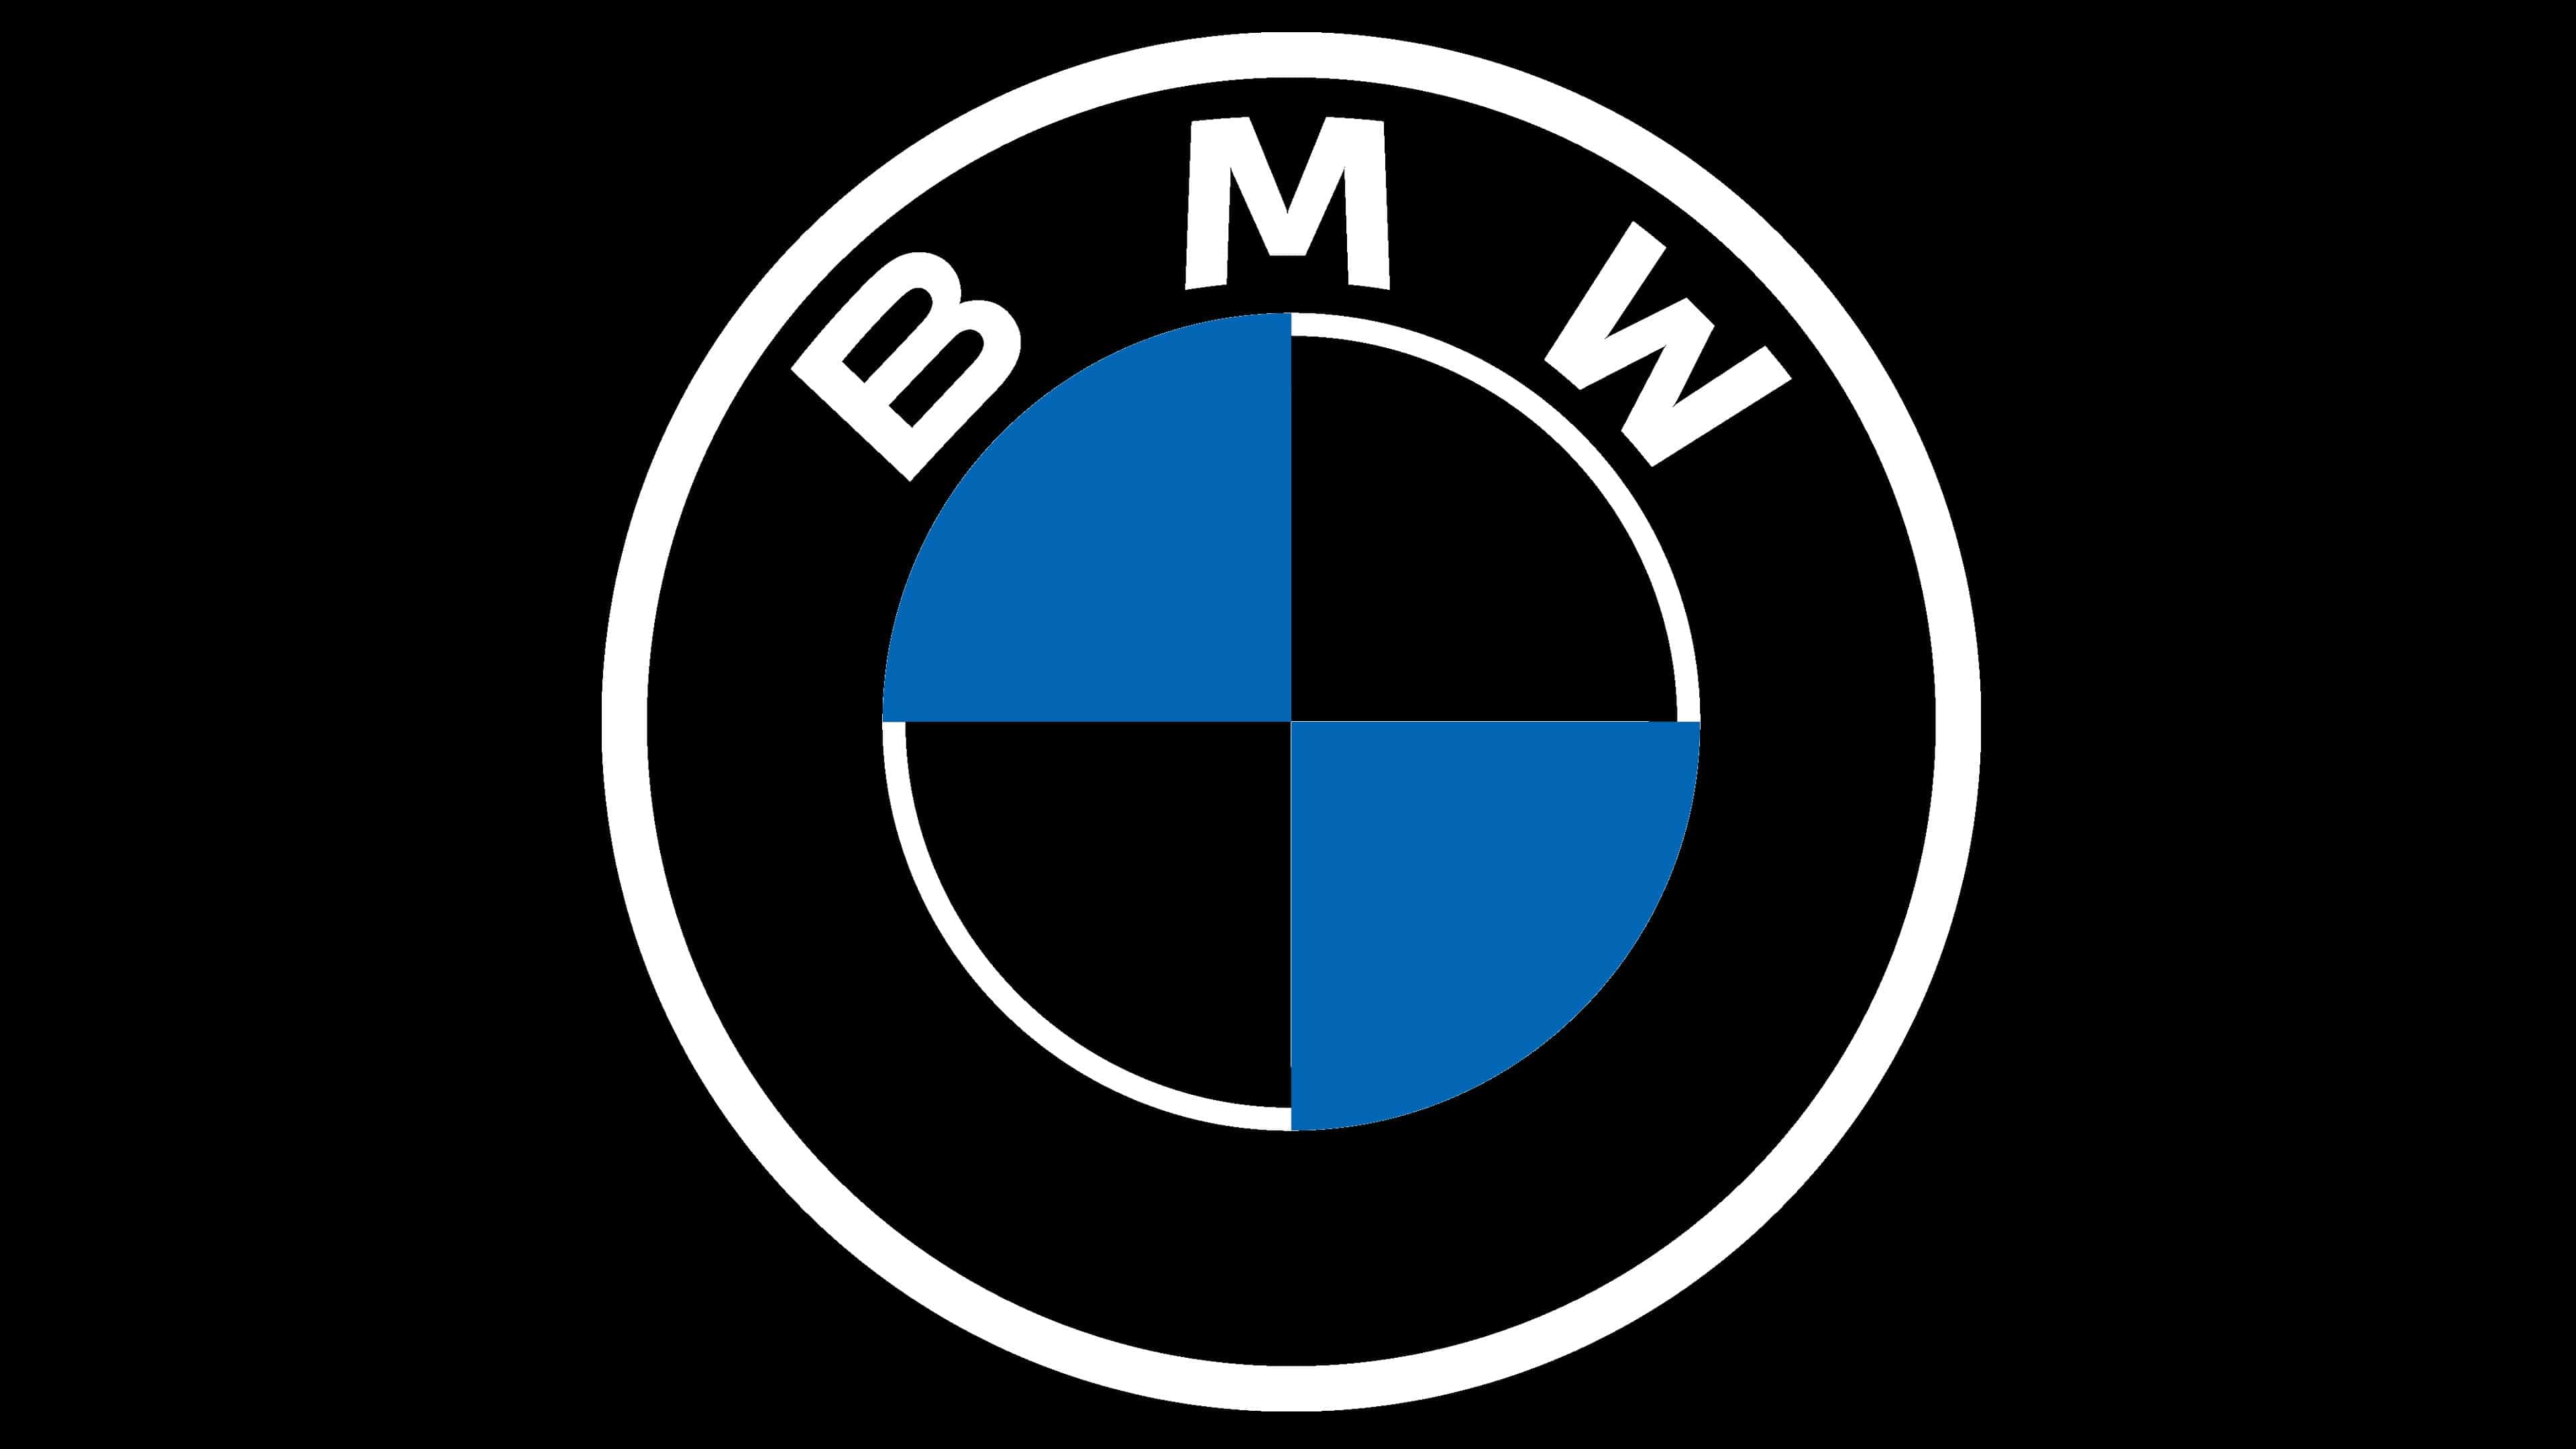 Bmw Emblem Logo